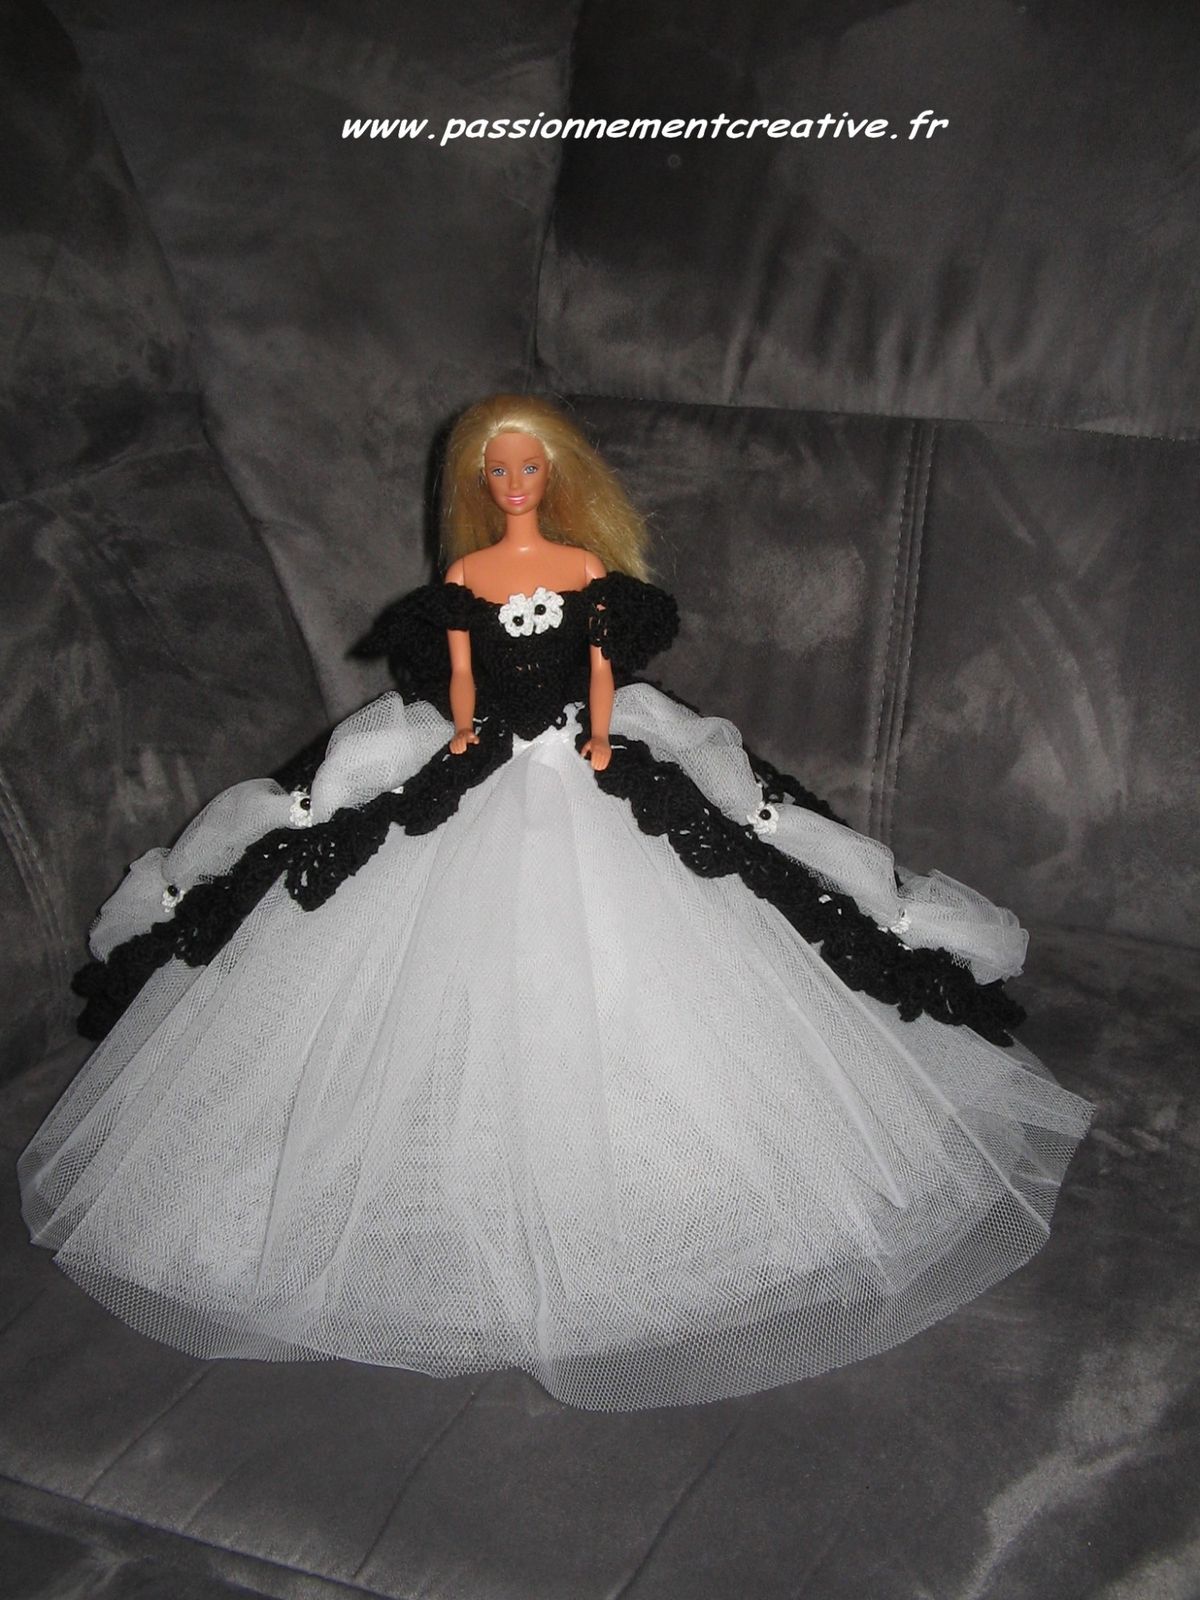 Tutoriel Barbie - Barbie Princesse Noire 2014 - Passionnement Créative